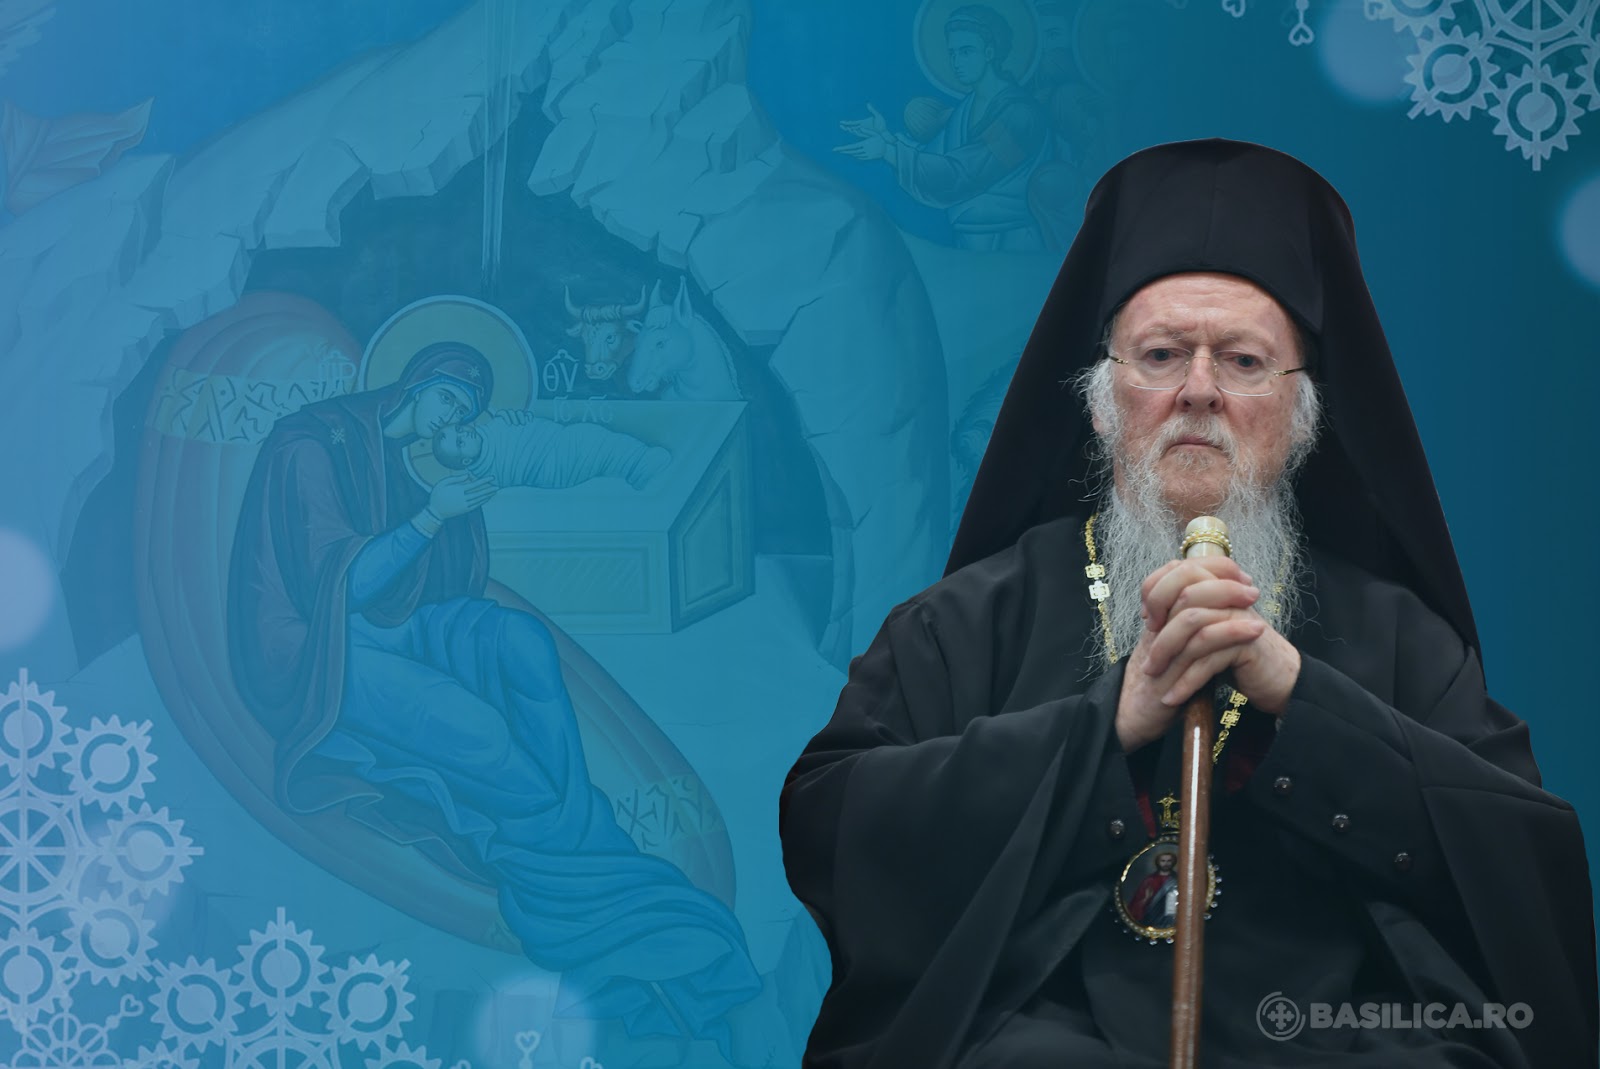 Επίθεση Οικουμενικού Πατριάρχη Βαρθολομαίου στην Μόσχα